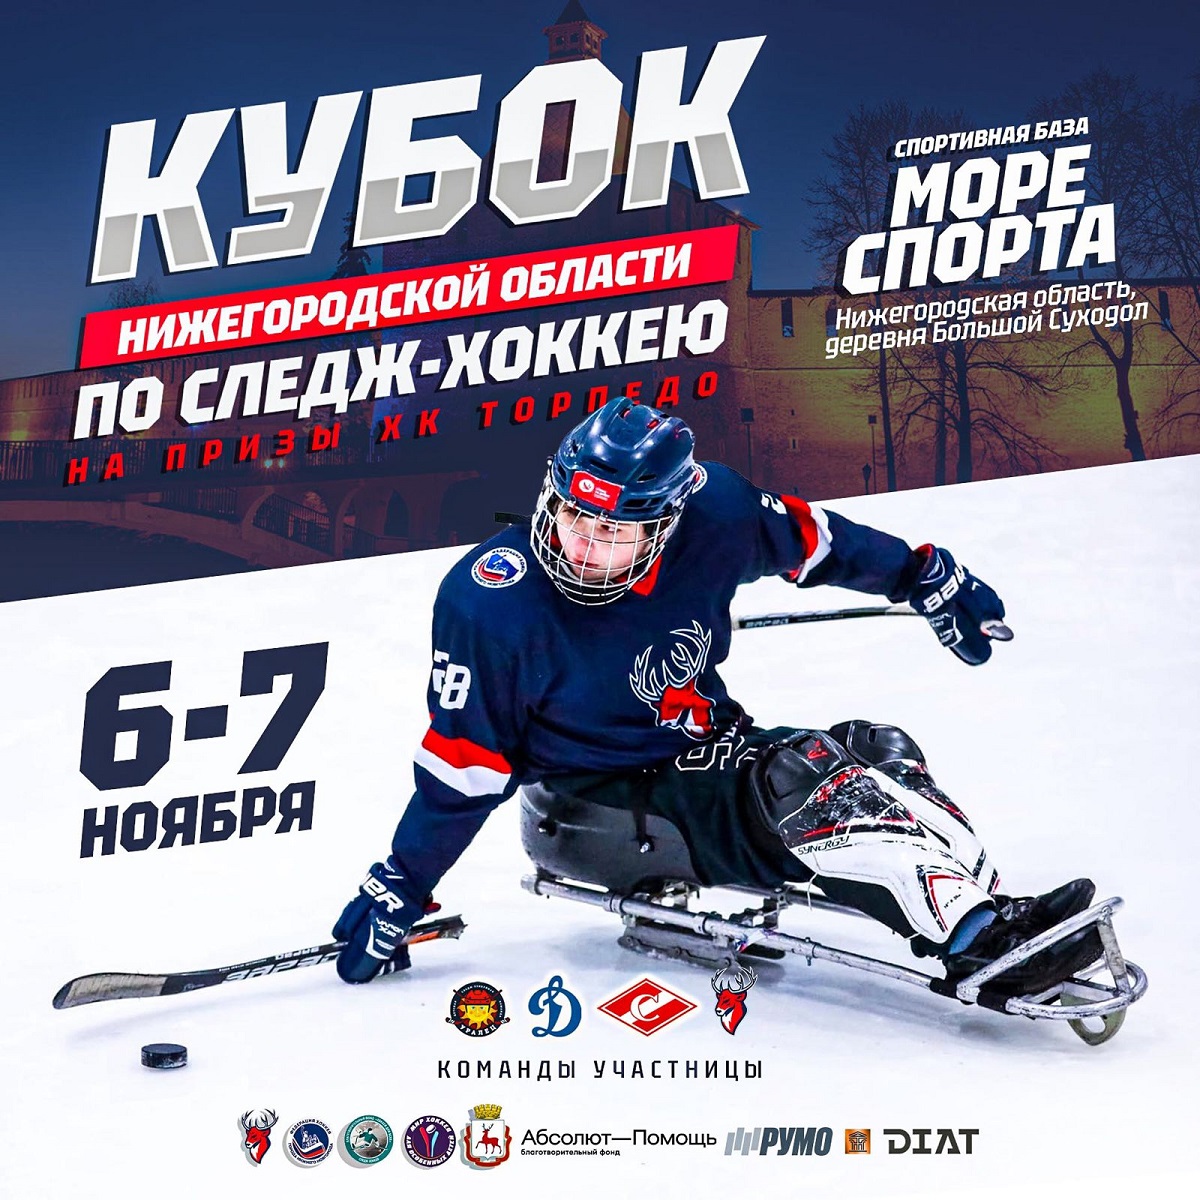 Детский турнир по следж-хоккею пройдет в Нижегородской области